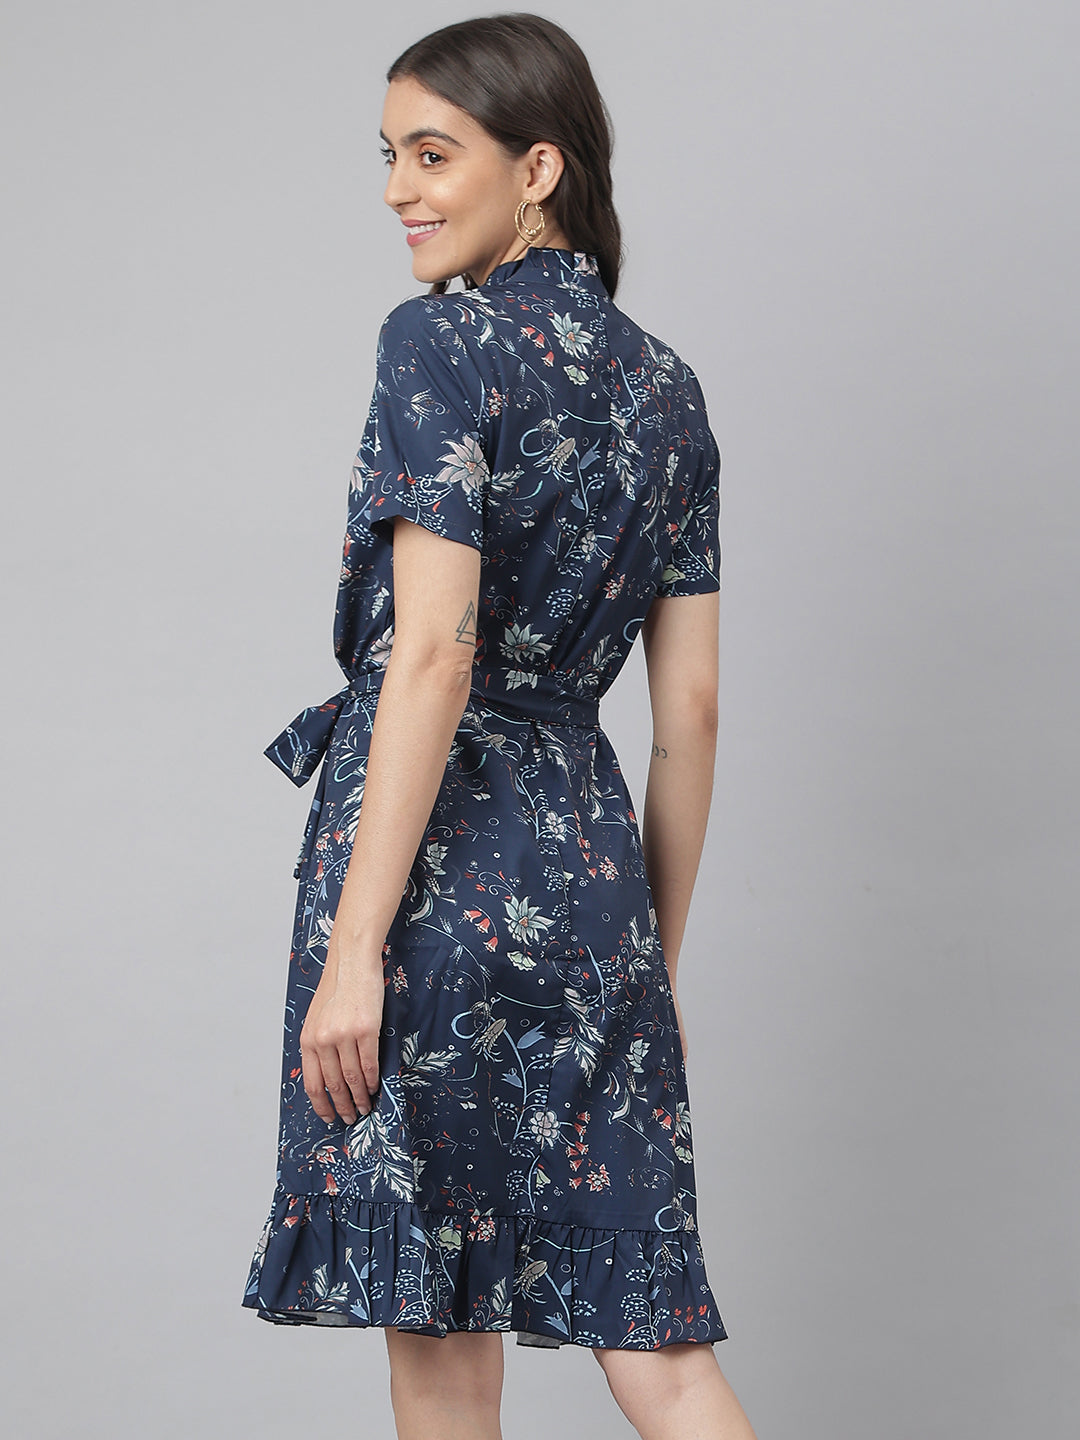 Navy Digital Printed Floral Dress